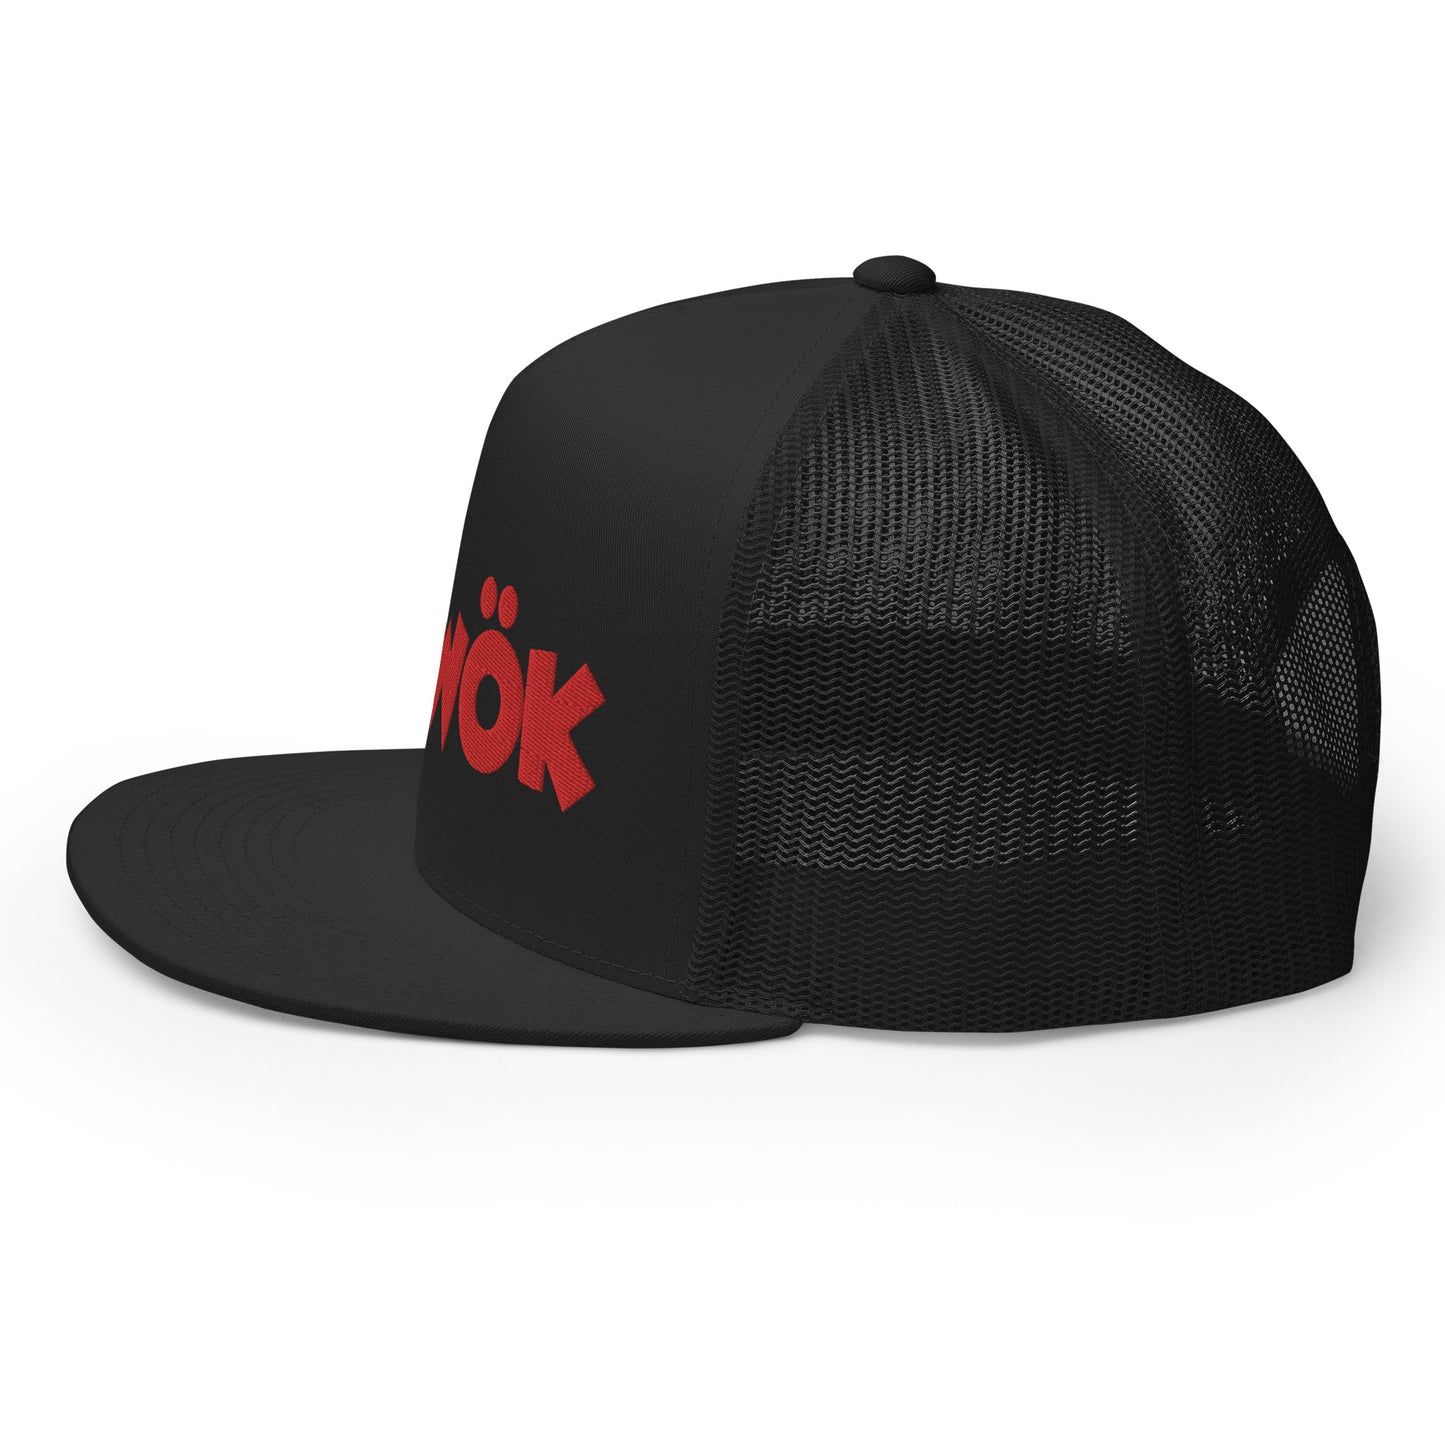 Skwok Brand / Hat / Trucker Cap / OG Logo / 3D Puff / Black / Red